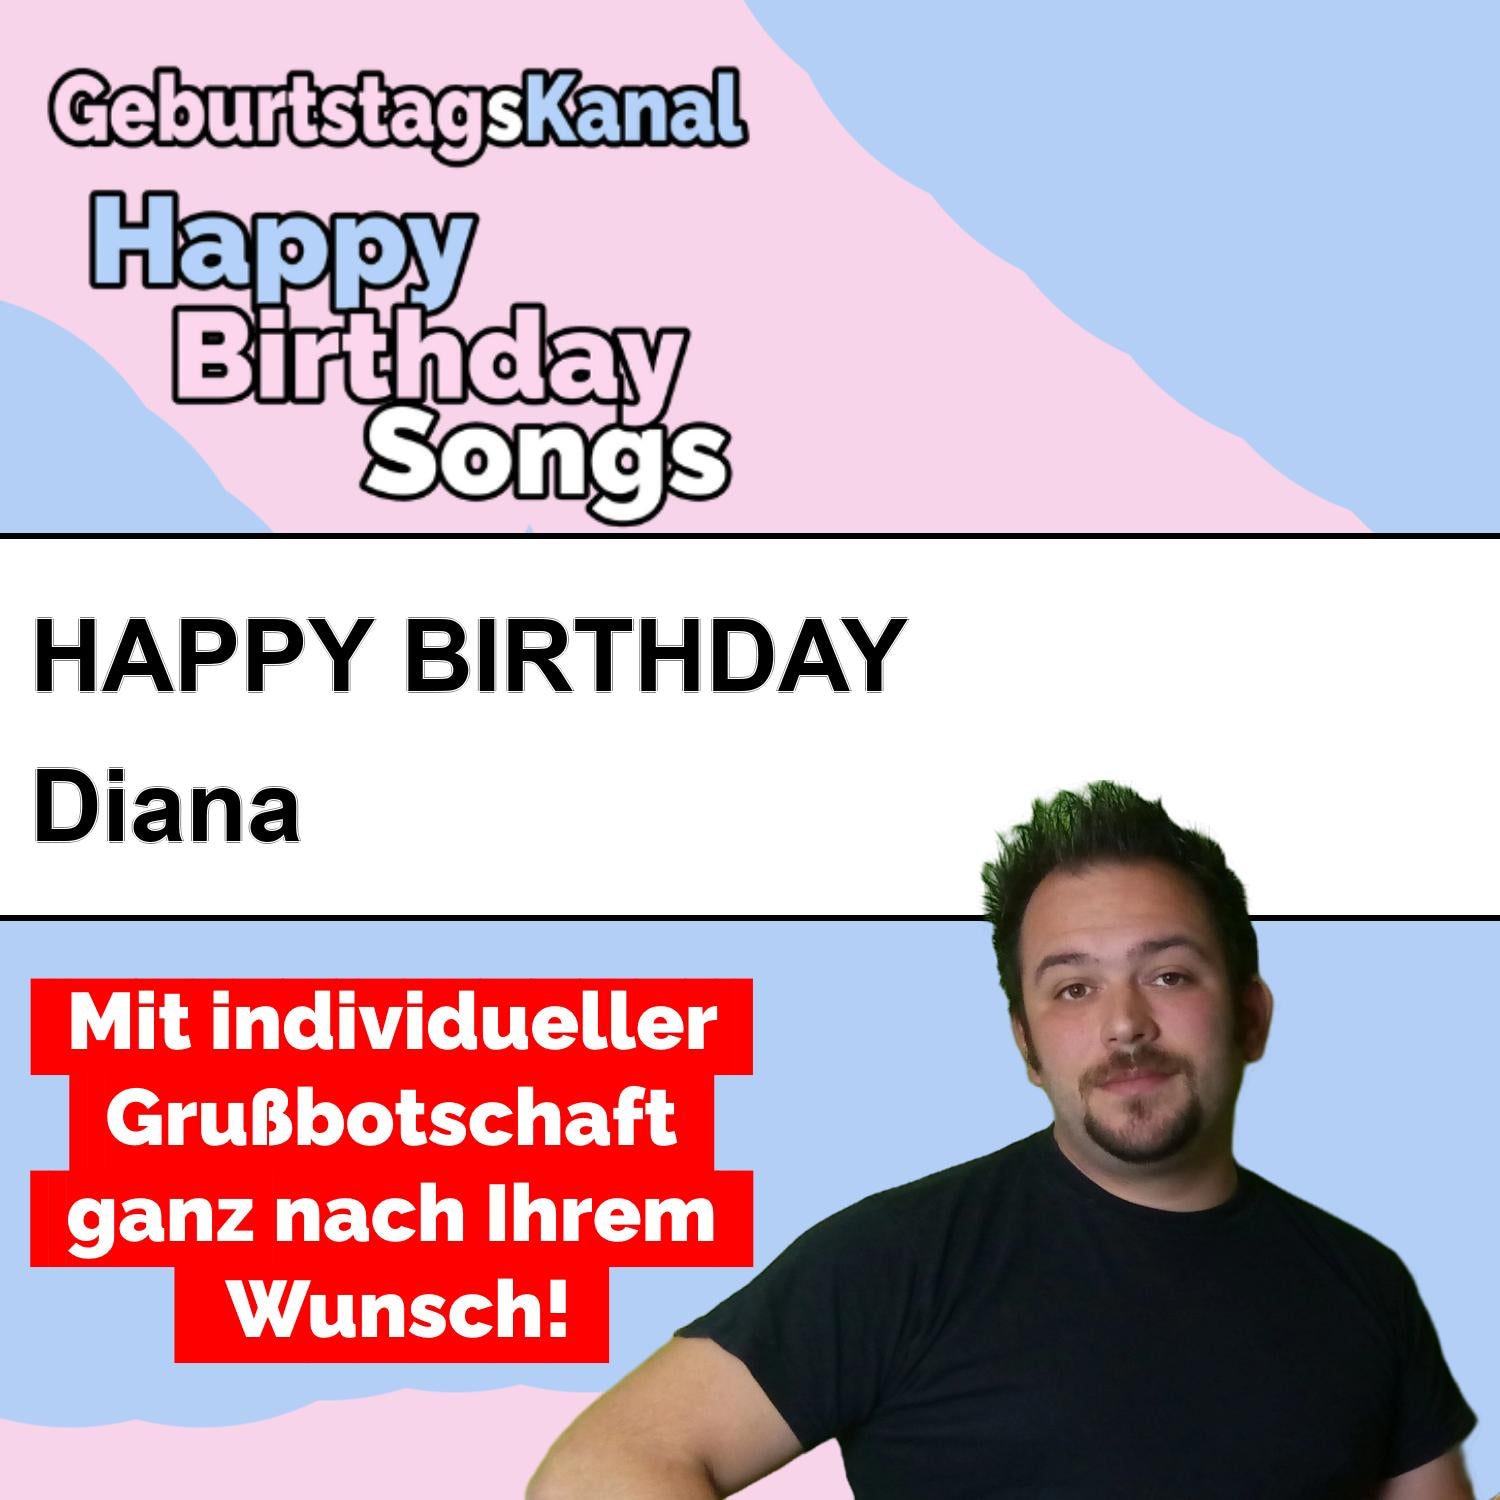 Produktbild Happy Birthday to you Diana mit Wunschgrußbotschaft